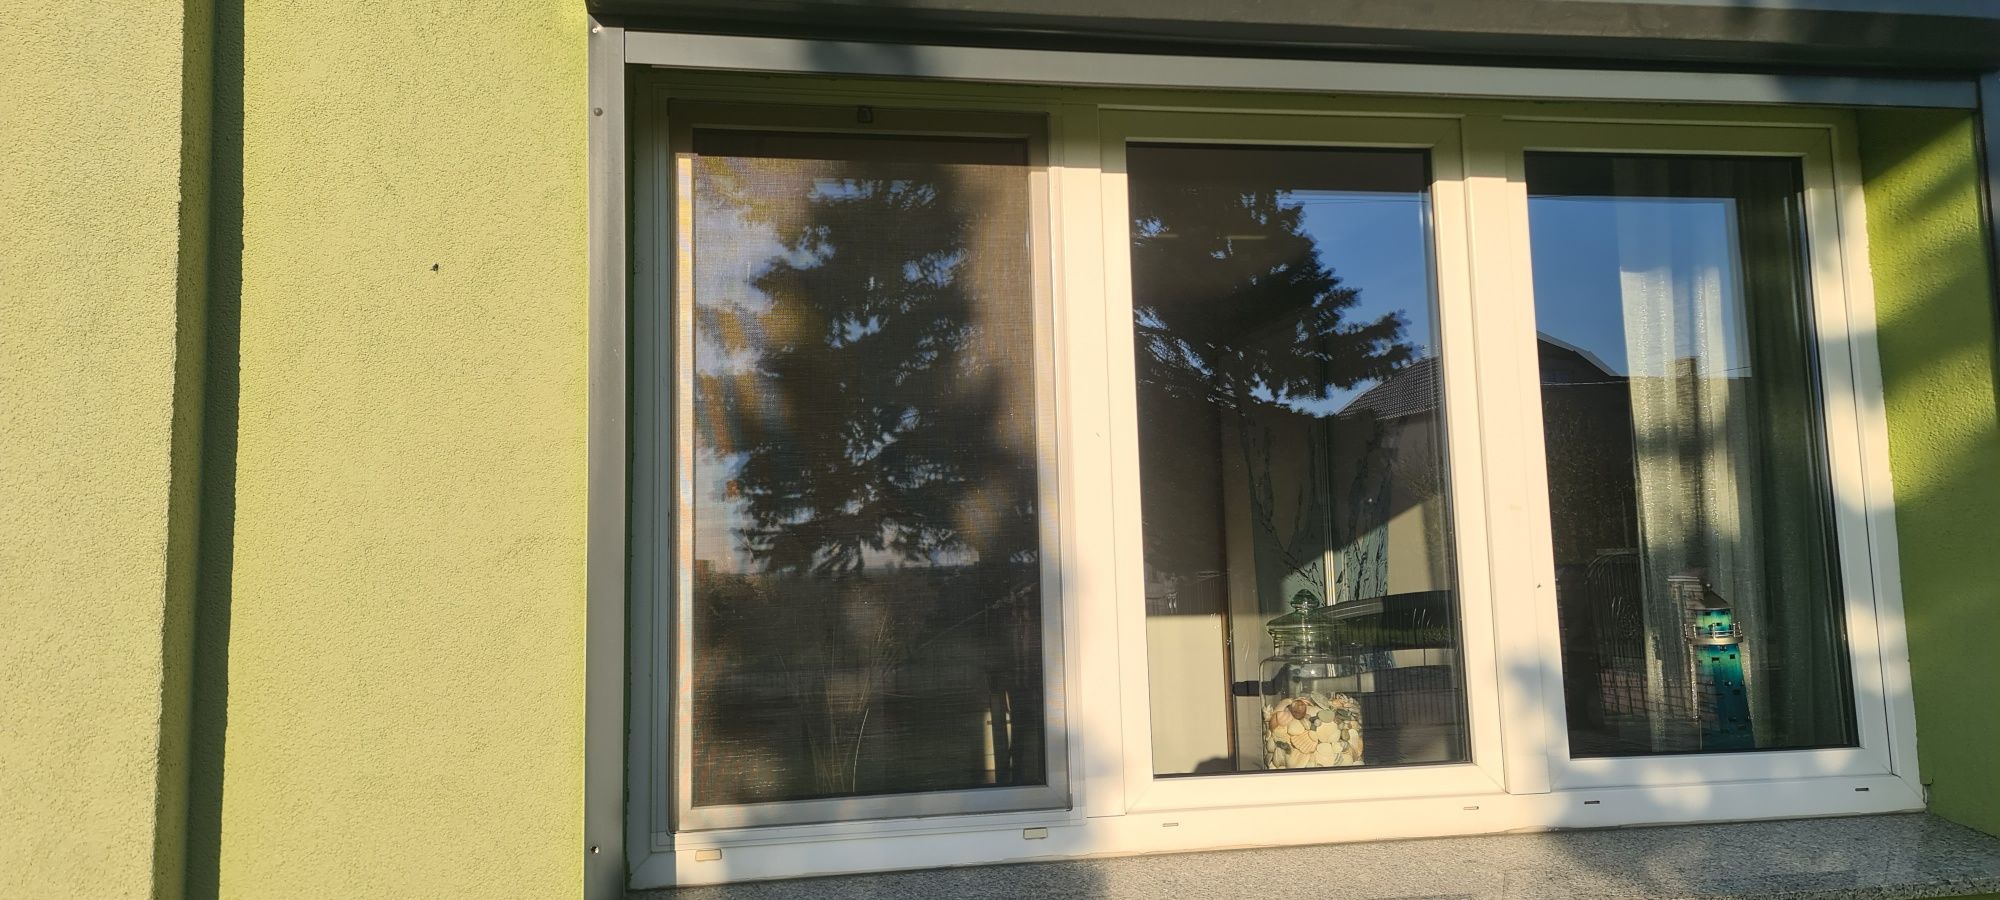 Okna używane  z moskitjerami